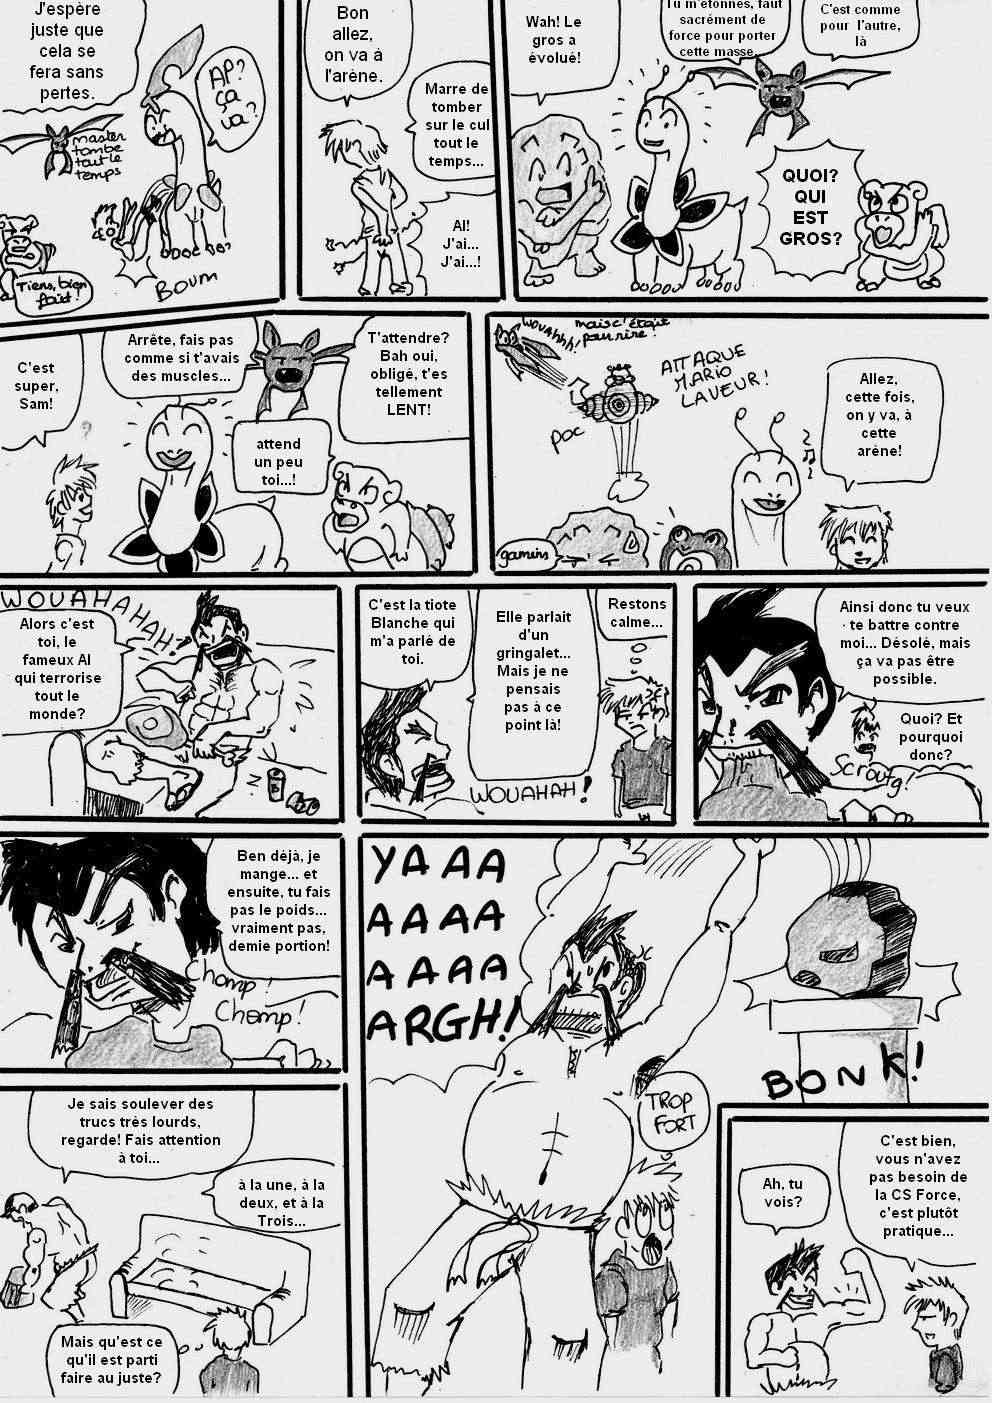 [Argent] shewolf's comic nuz - Page 11 Planch16